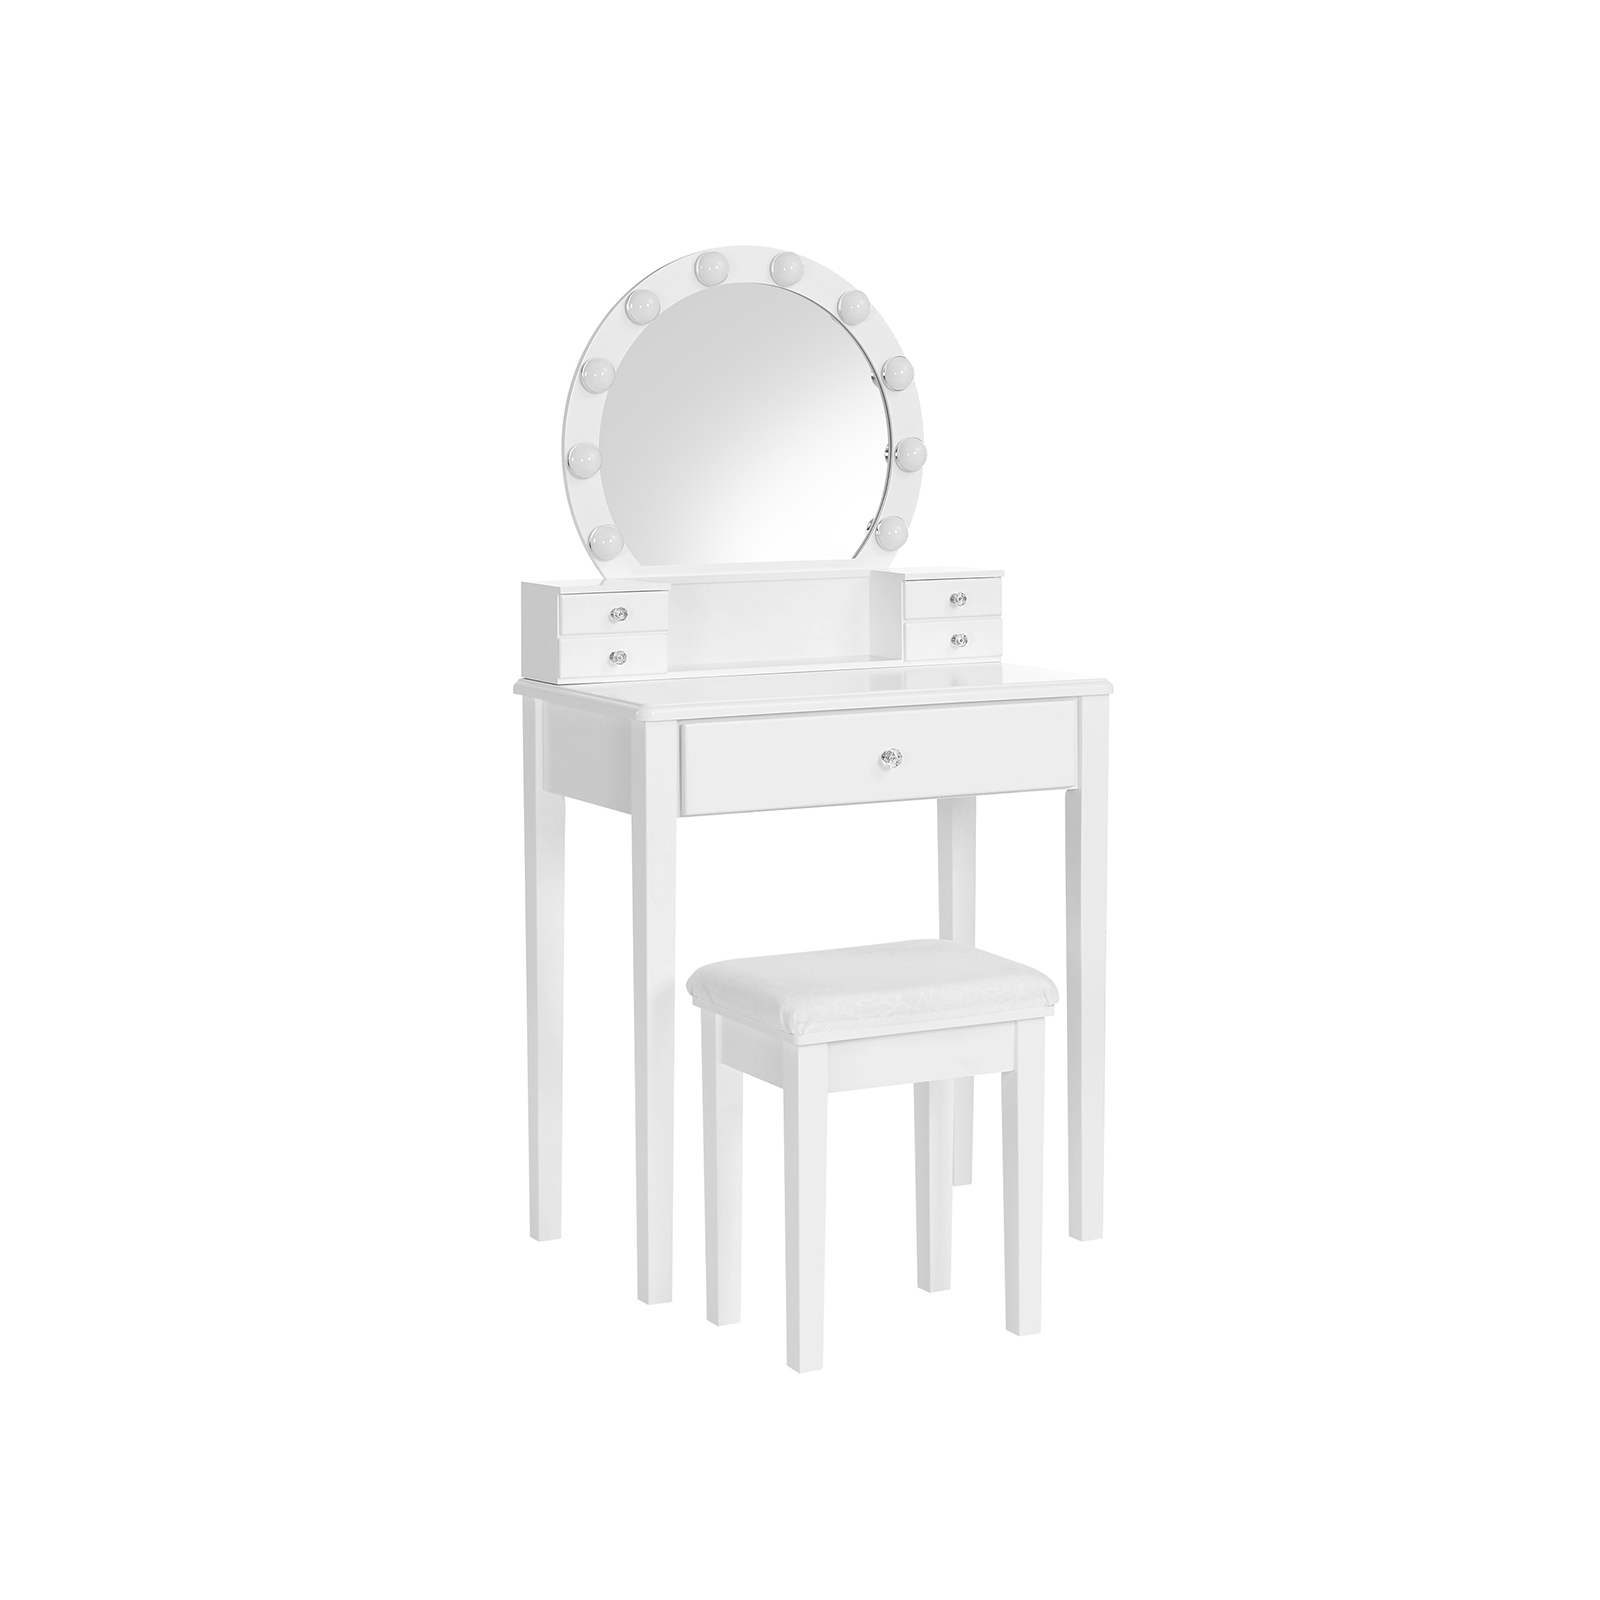 Kaptafel met spiegel en verlichting – Make up tafel – Kaptafel met spiegel – Inclusief krukje – 70 x 40 x 134 cm – Wit